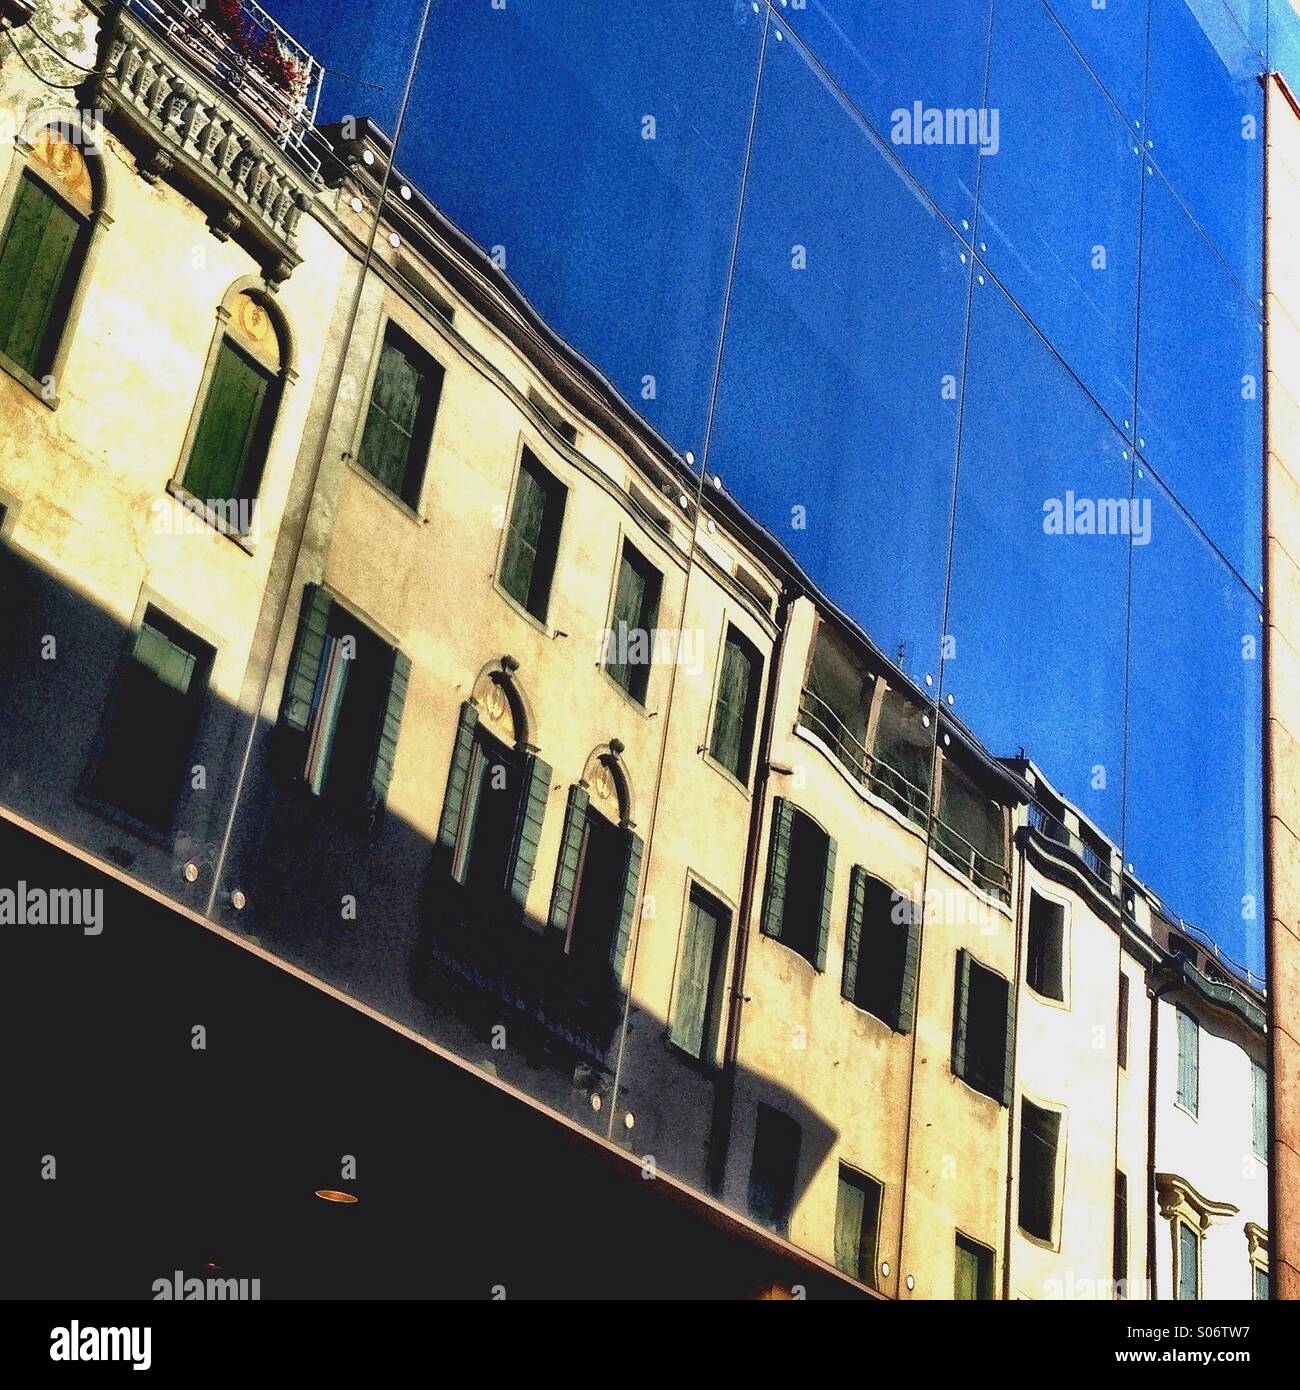 La réflexion de bâtiments médiévaux sur une fenêtre en verre, Padoue, Italie Banque D'Images